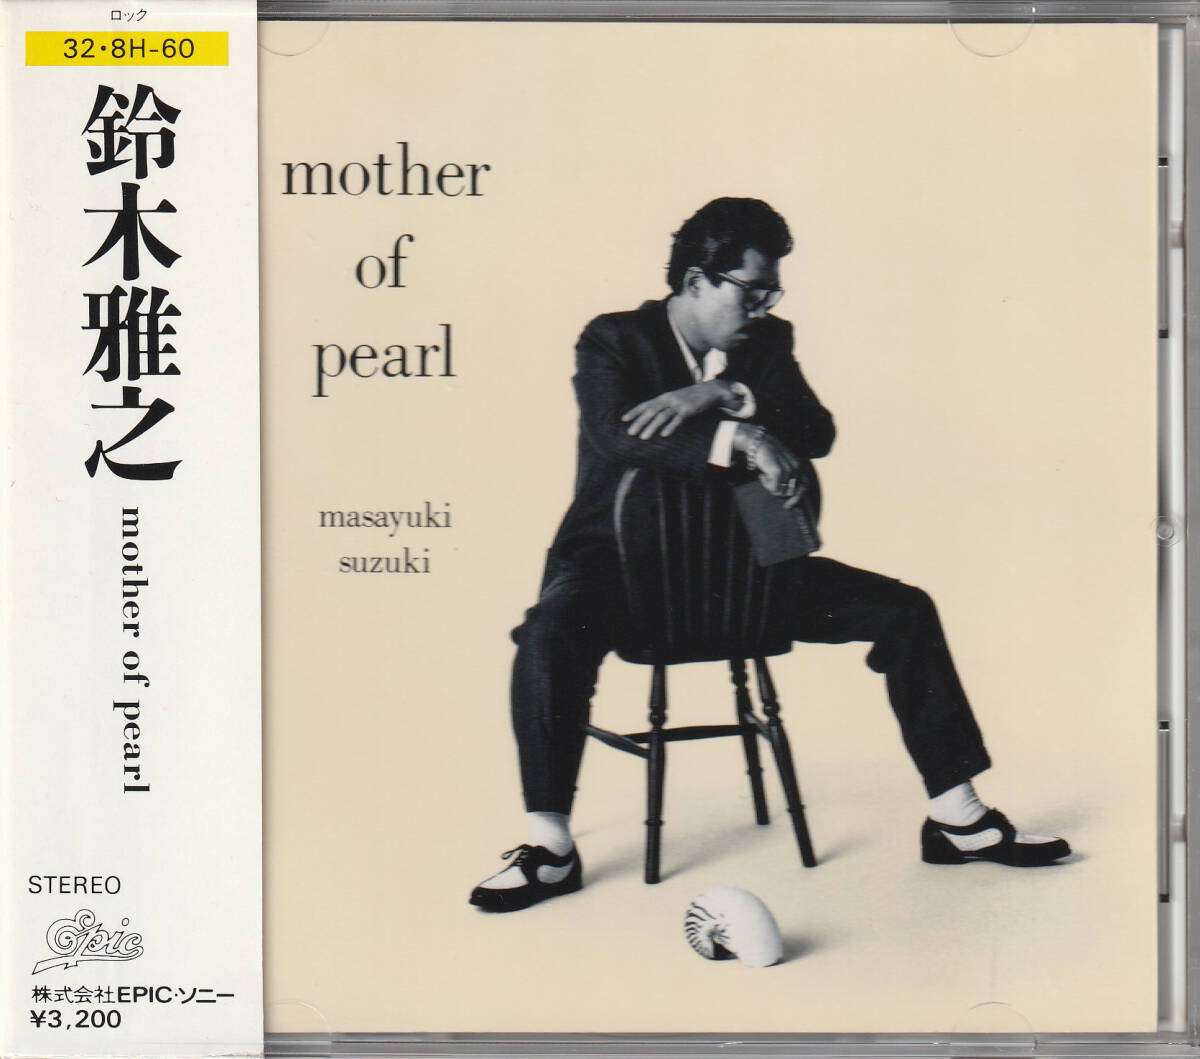 鈴木雅之/mother of pearl(箱帯 32・8H-60)_画像1